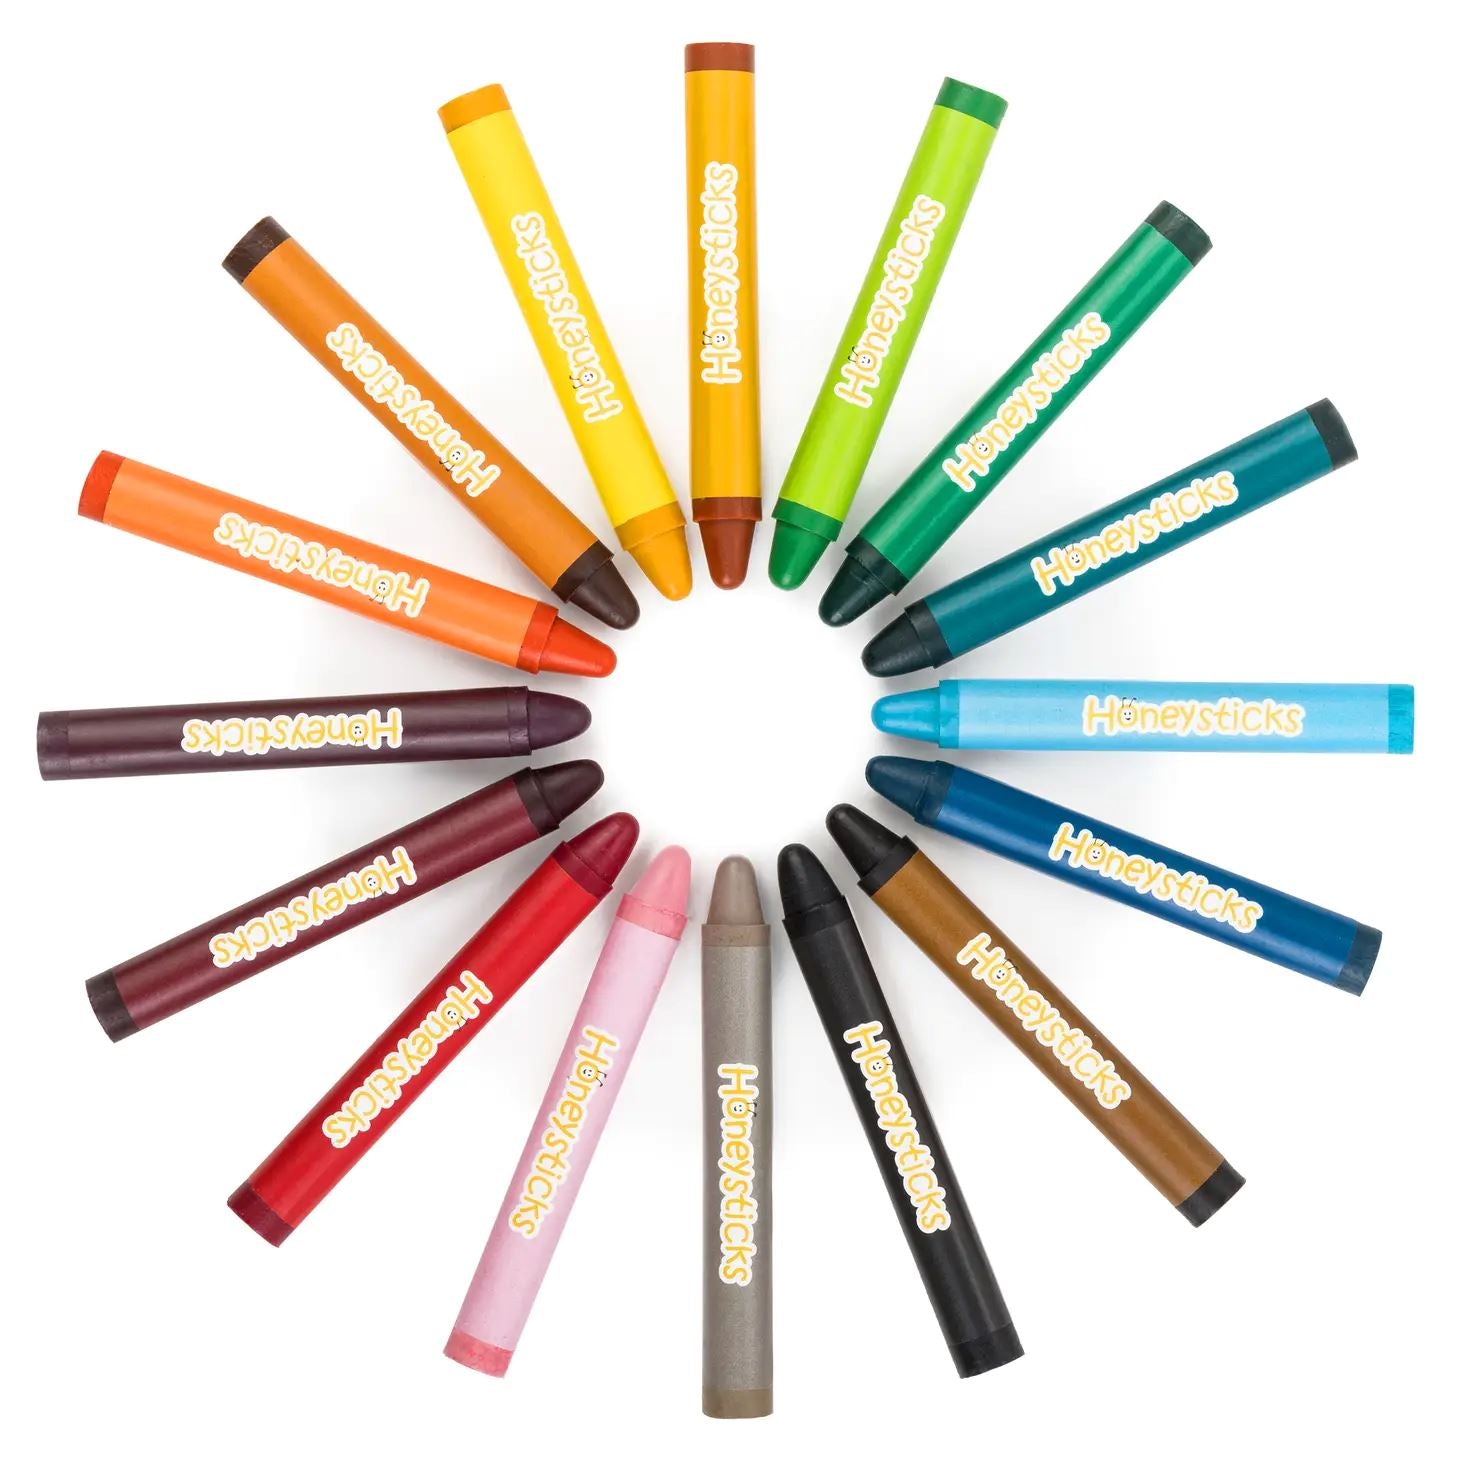 Honeysticks Jumbo Crayons 16 Pack - Third Drawer Down